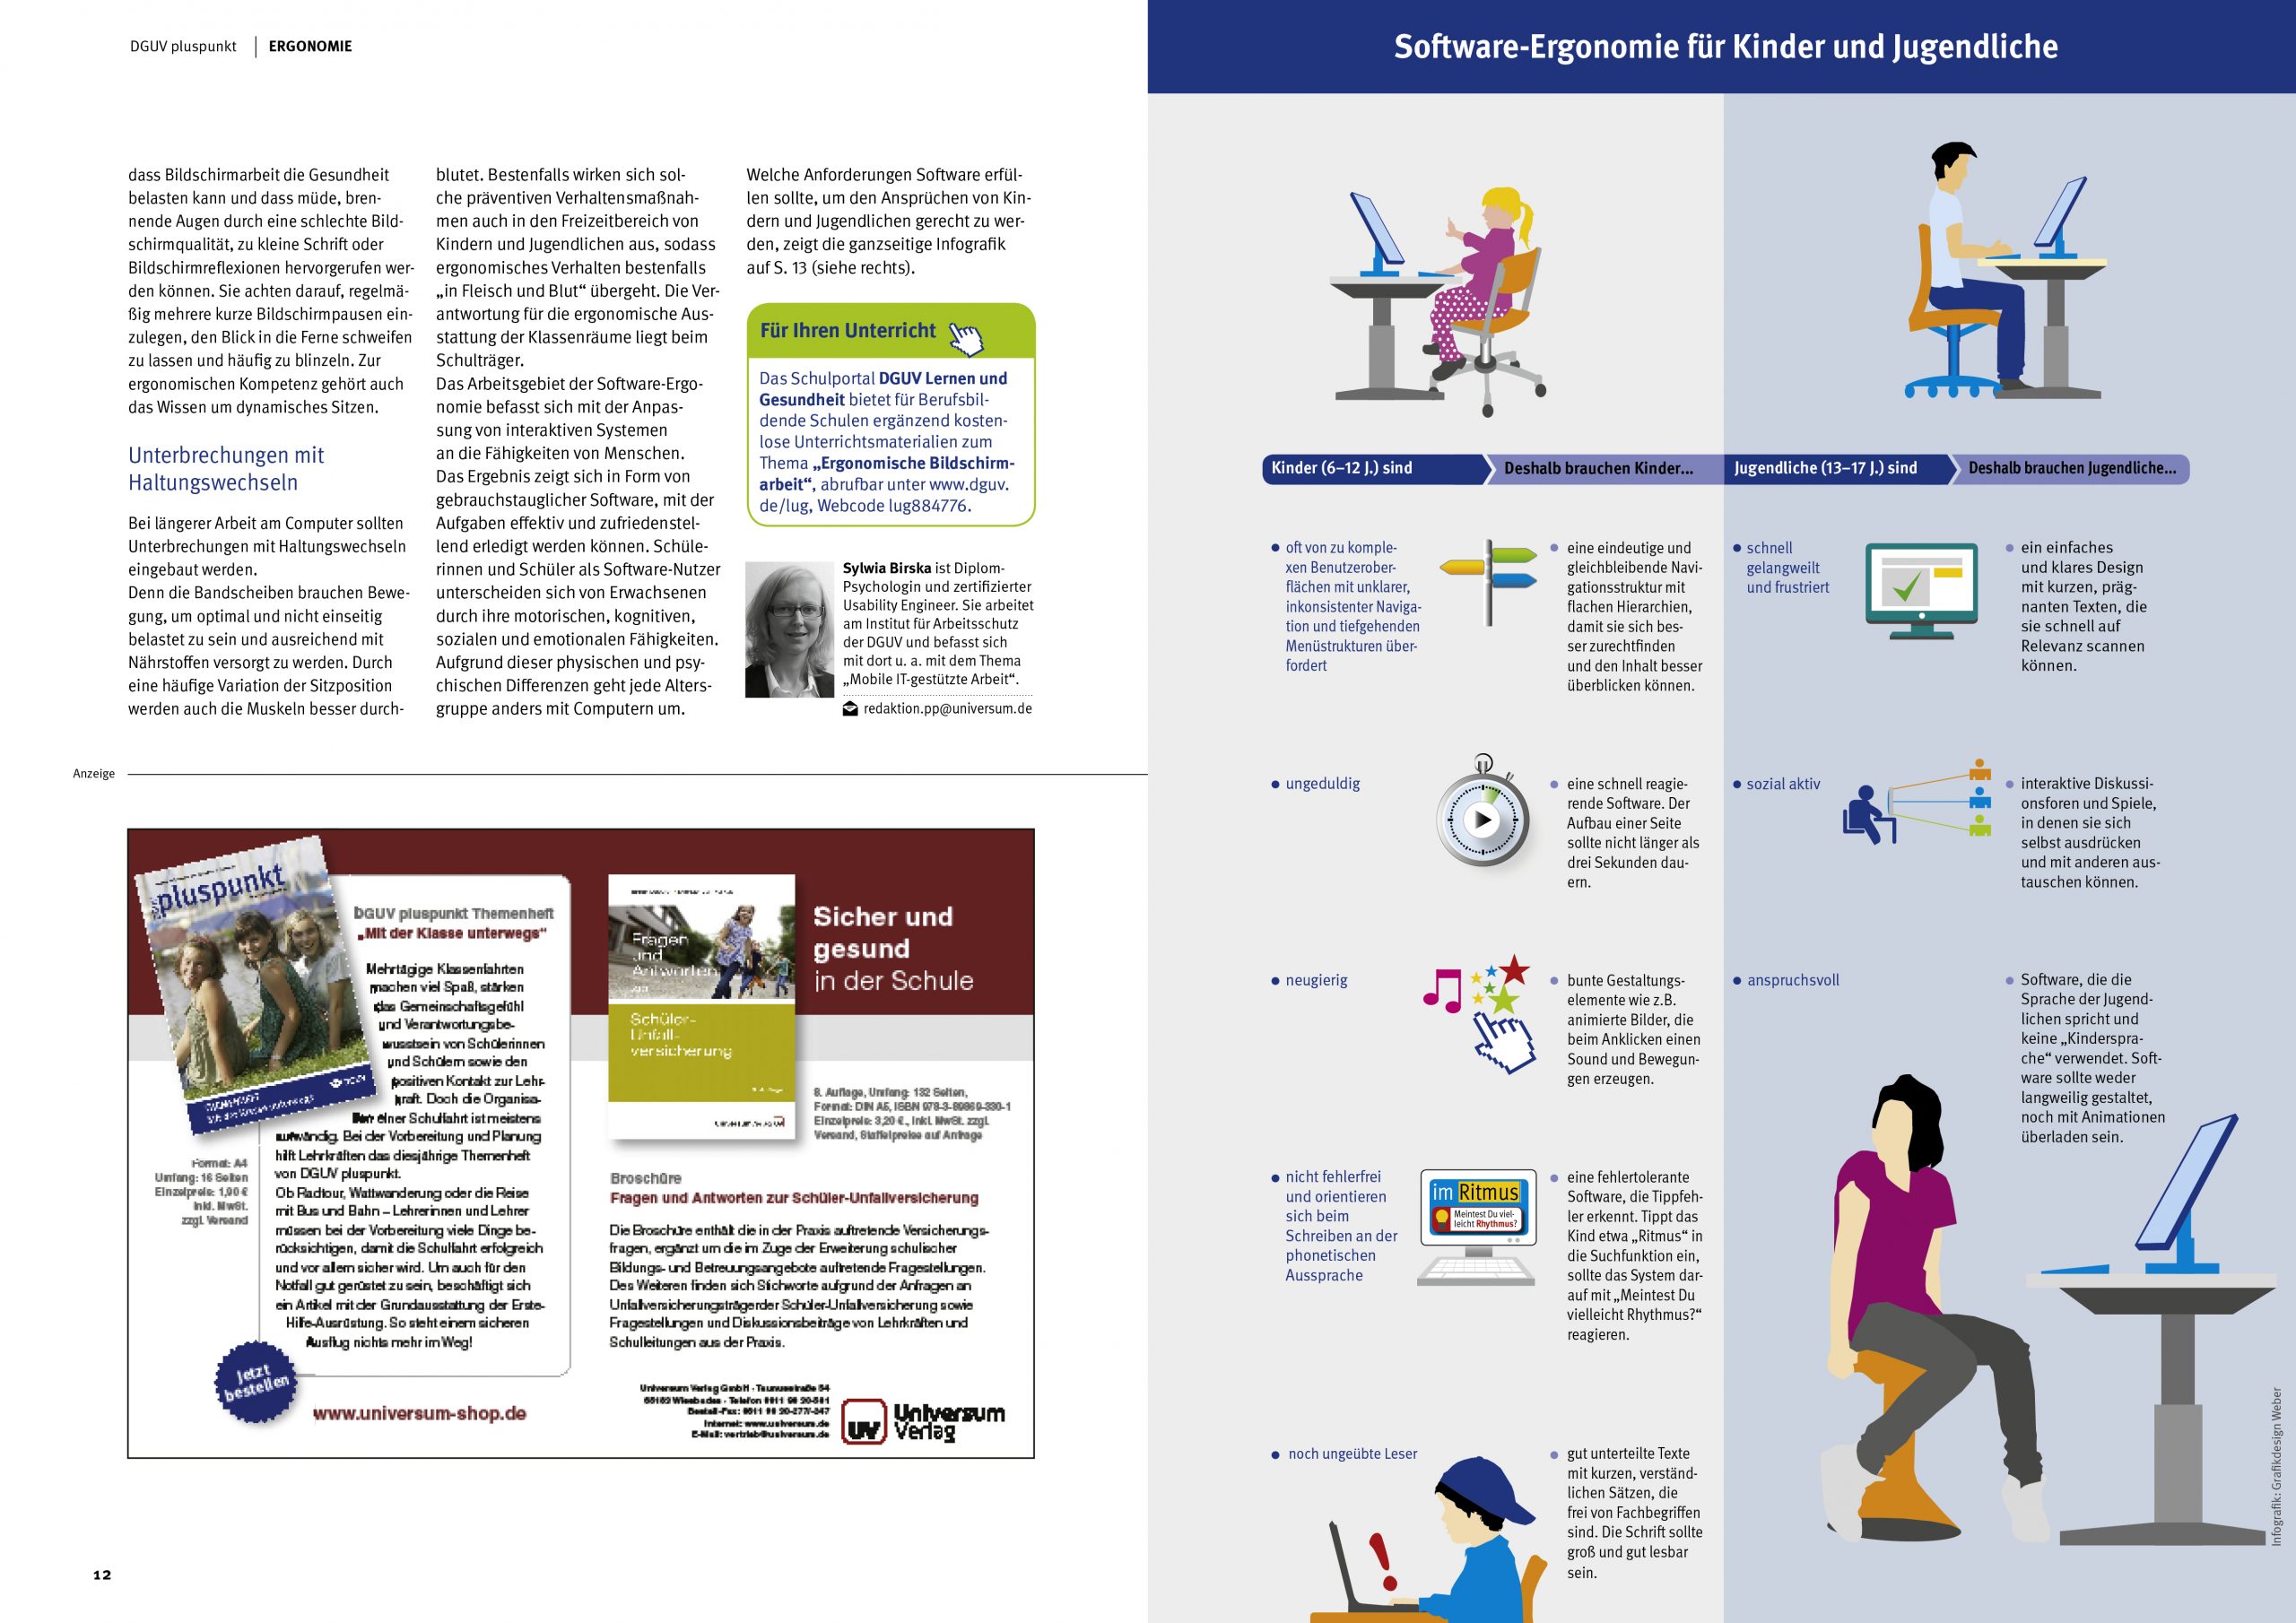 Abbildung der Medienveröffentlichung zum Thema Digitale Lernmittel und Lernsoftware-Ergonomie